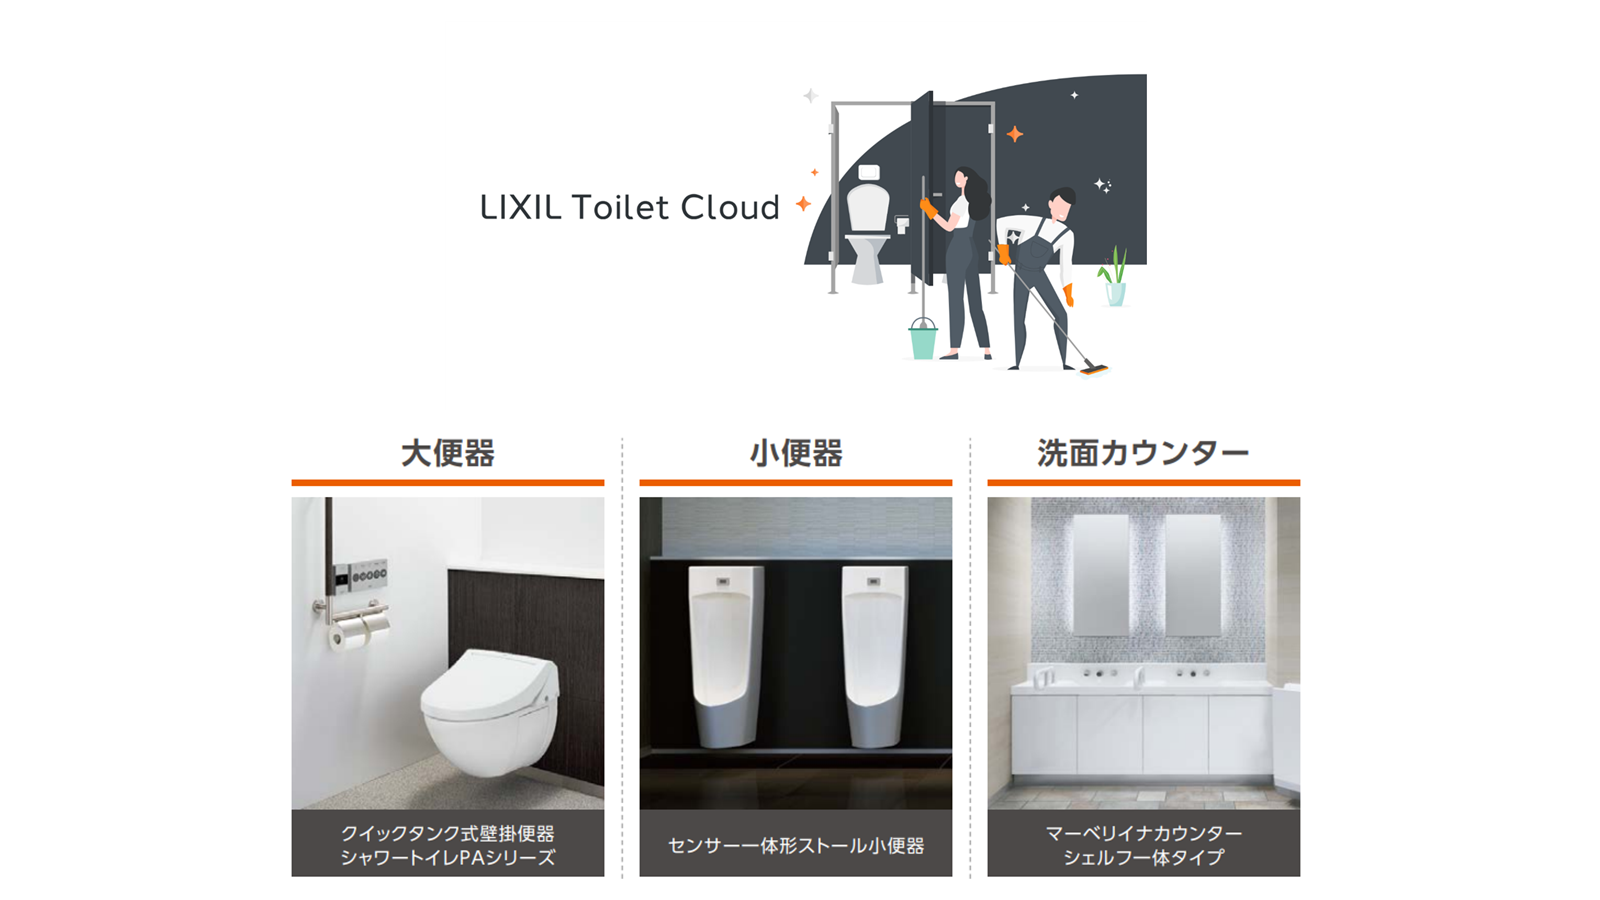 パブリックトイレの清掃・メンテナンス業務をDX刷新する「LIXIL Toilet Cloud」 IoT対応の衛生器具を新たにラインアップし、機能が大幅アップグレード サムネイル画像